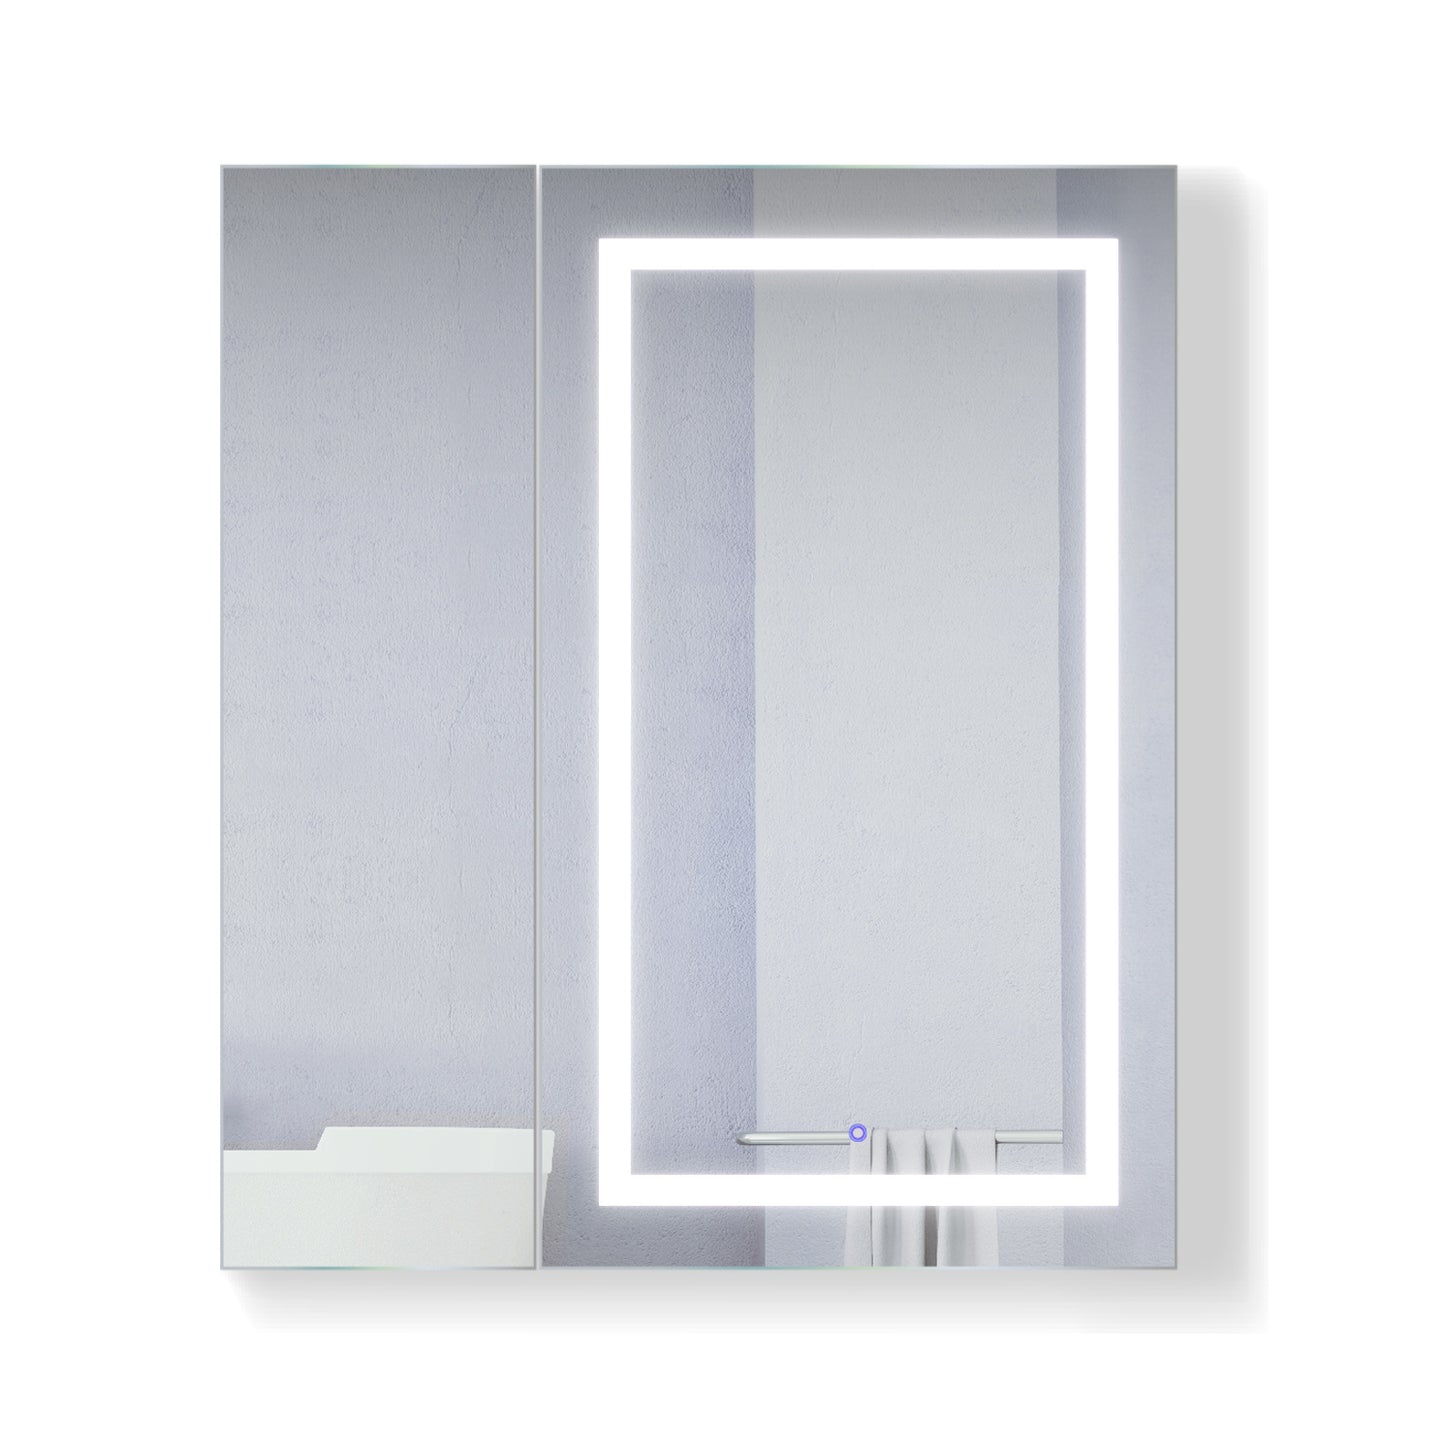 Krugg Svange 42 x 42 LED Medicine Cabinet - Defogger, Dimmer